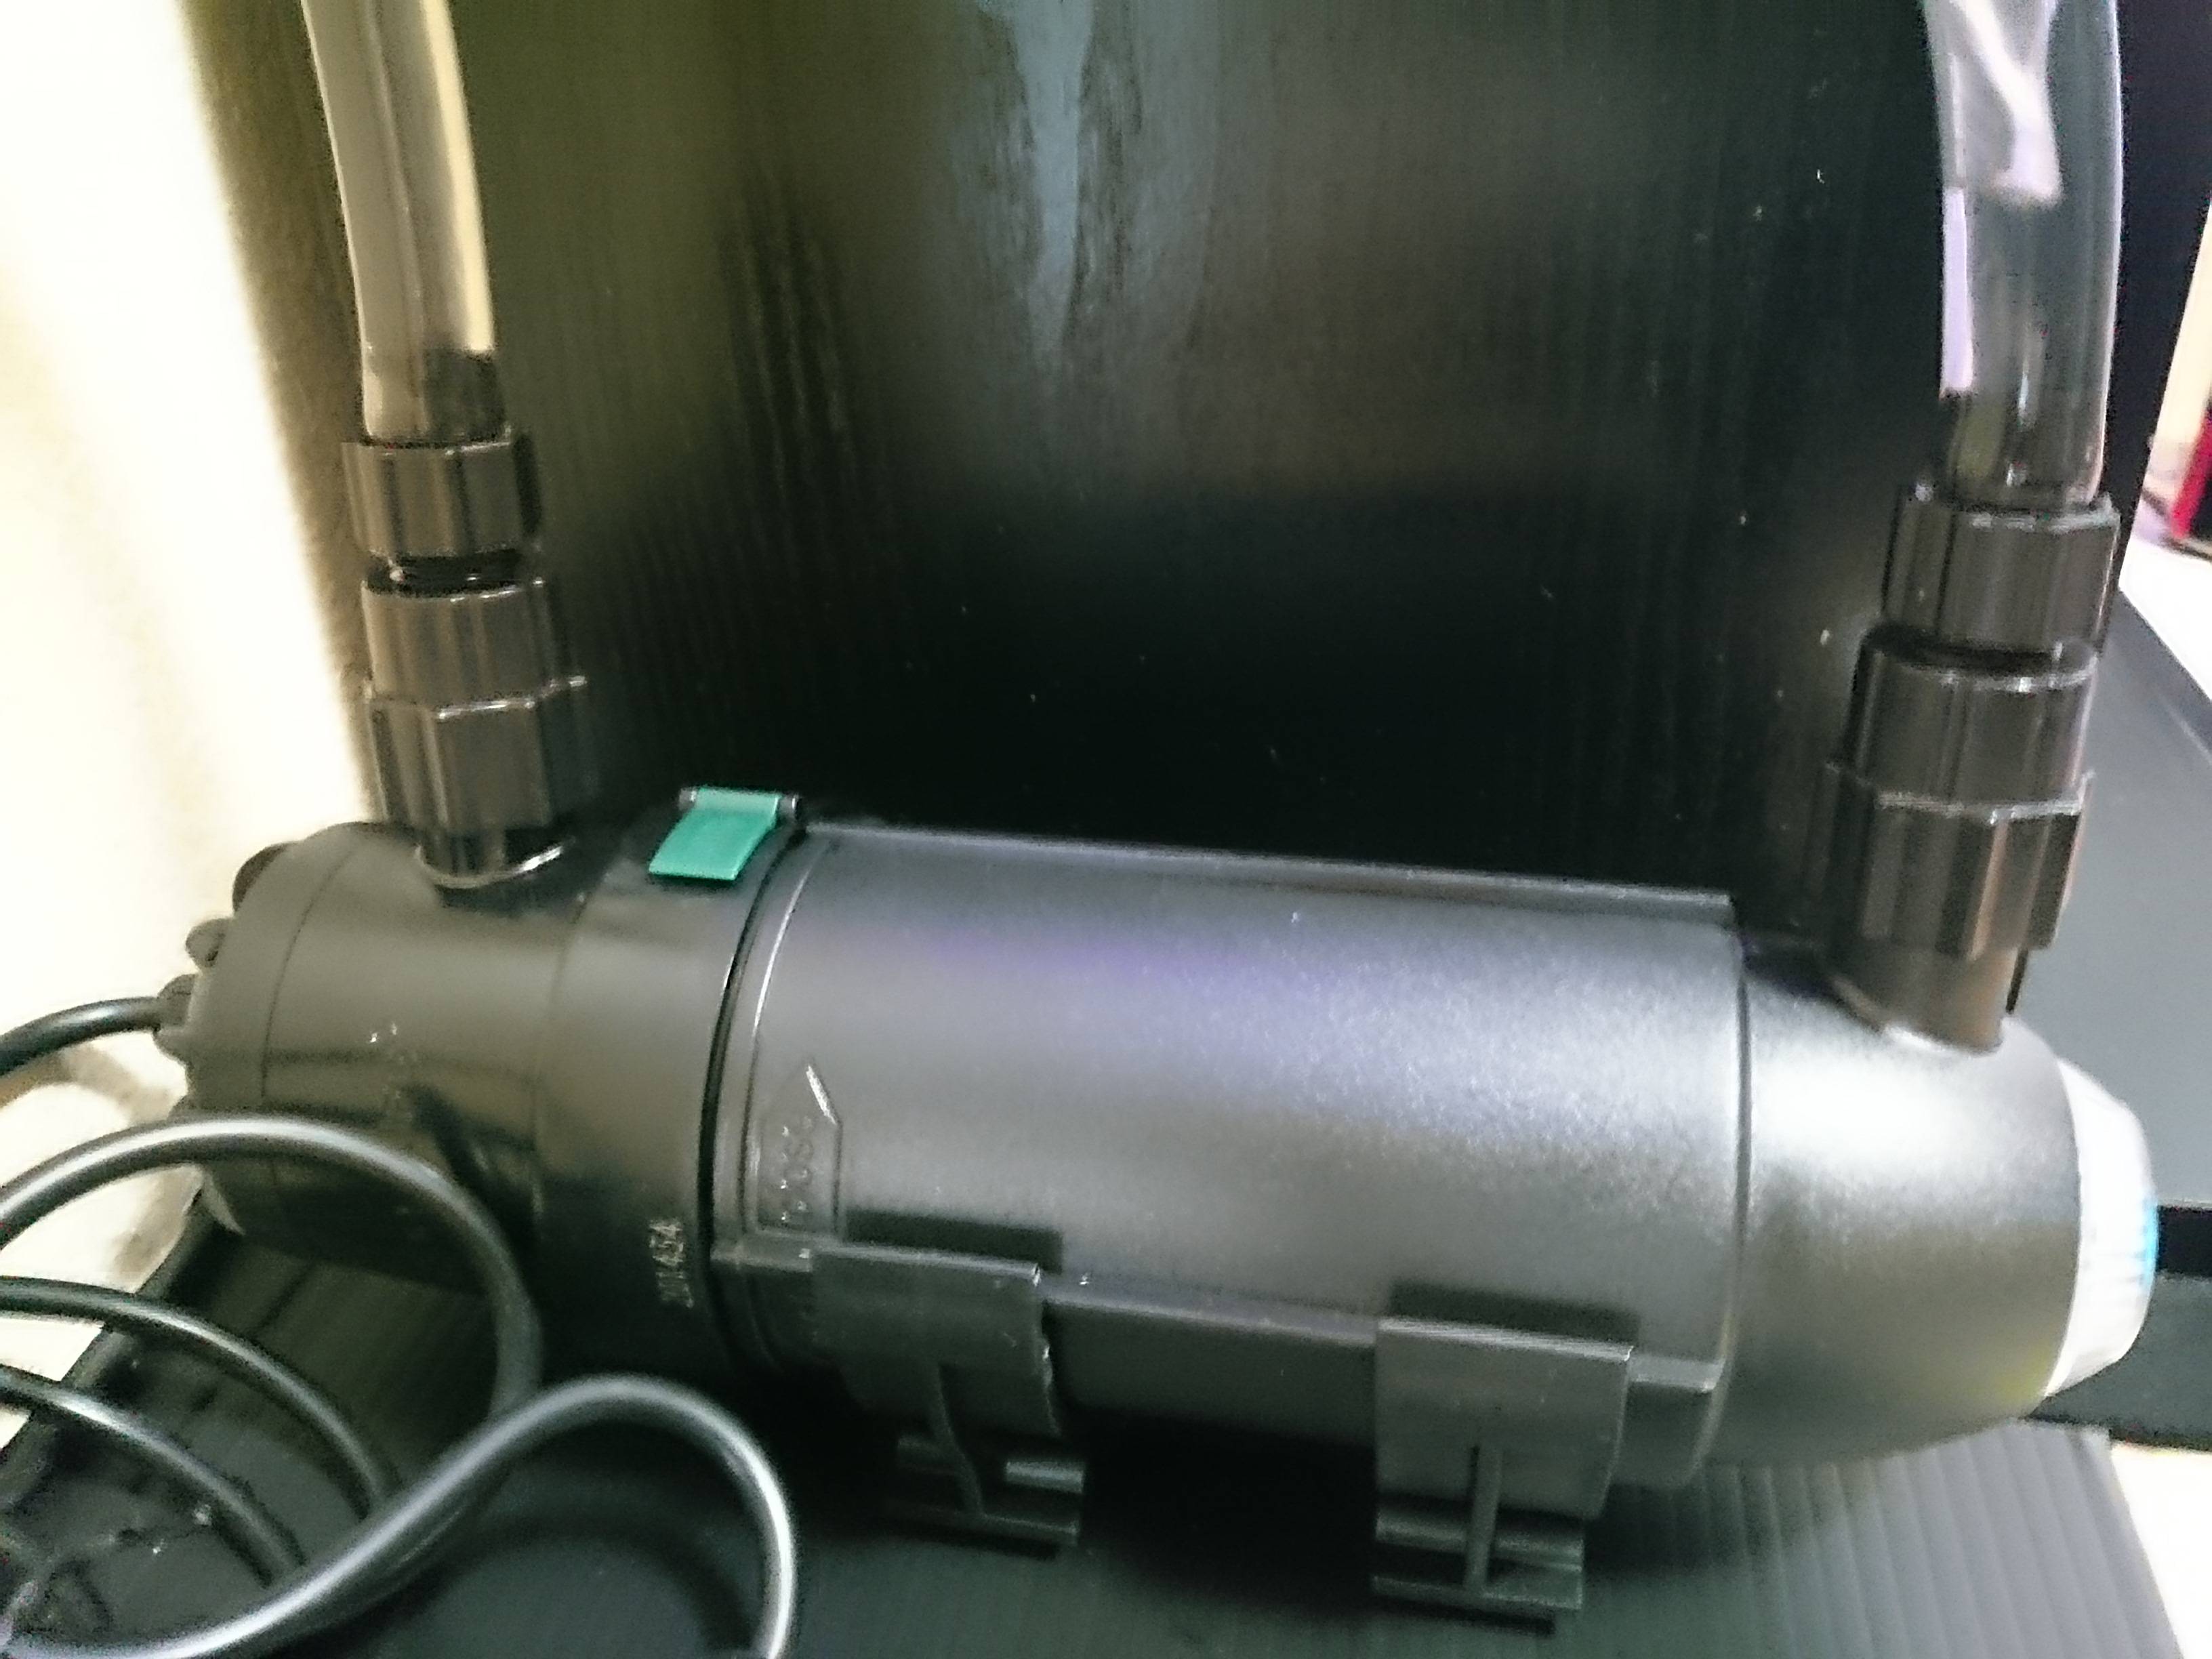 カミハタ UV殺菌灯 ターボツイストZ 9W (約300L以下の水槽に対応)